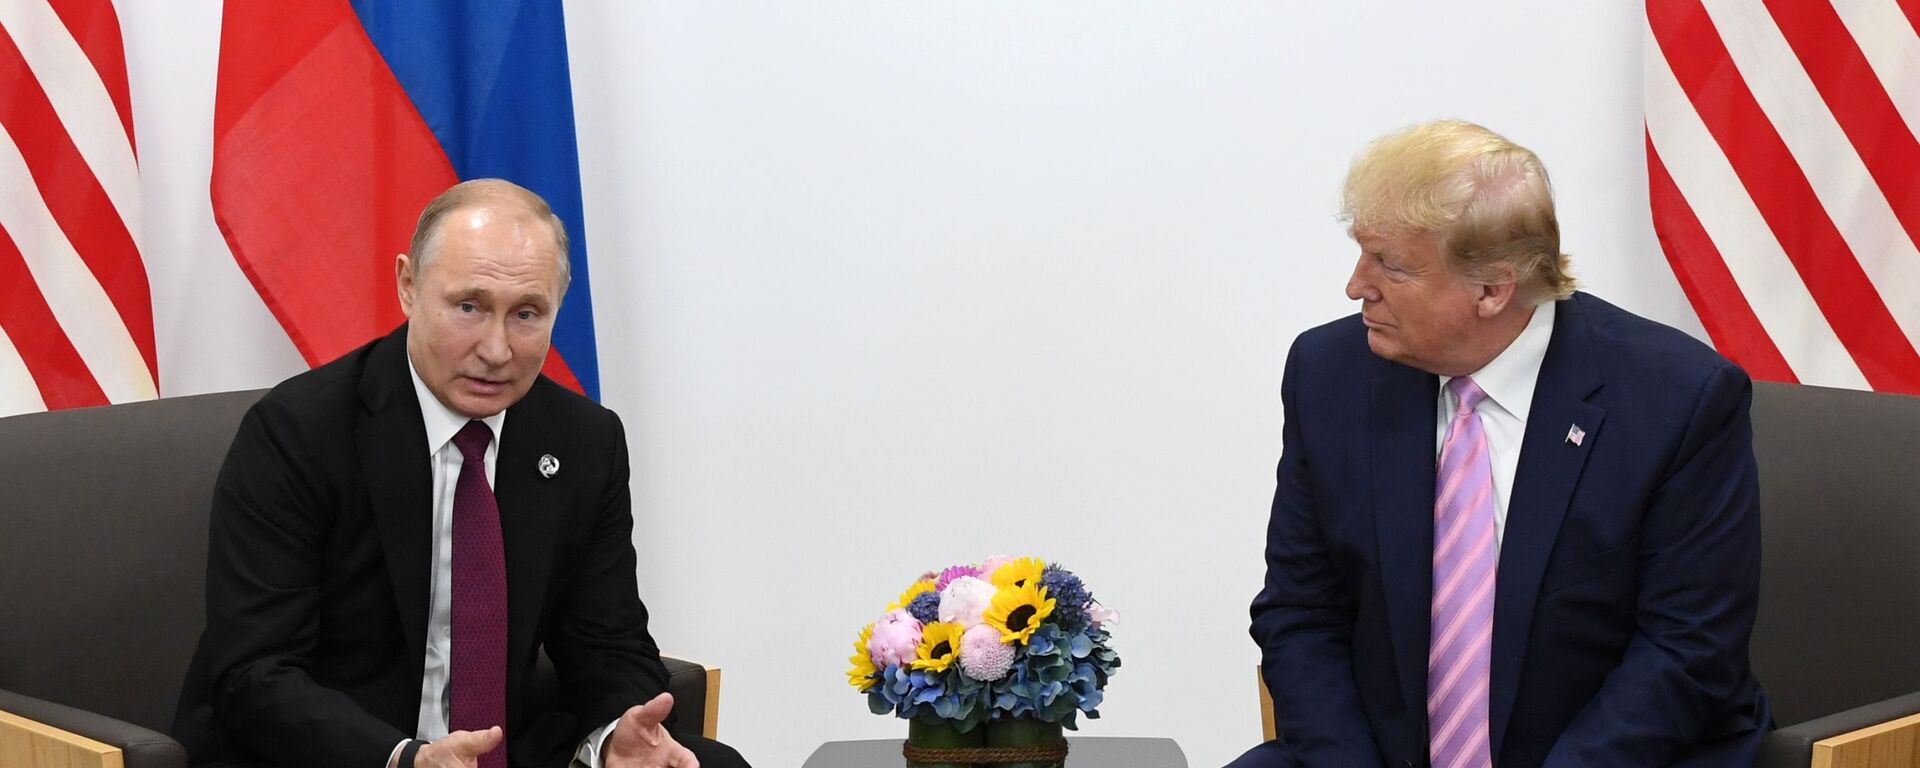 Rusijos prezidento Vladimiro Putino ir JAV prezidento Donaldo Trampo susitikimas G20 viršūnių susitikime - Sputnik Lietuva, 1920, 06.10.2021